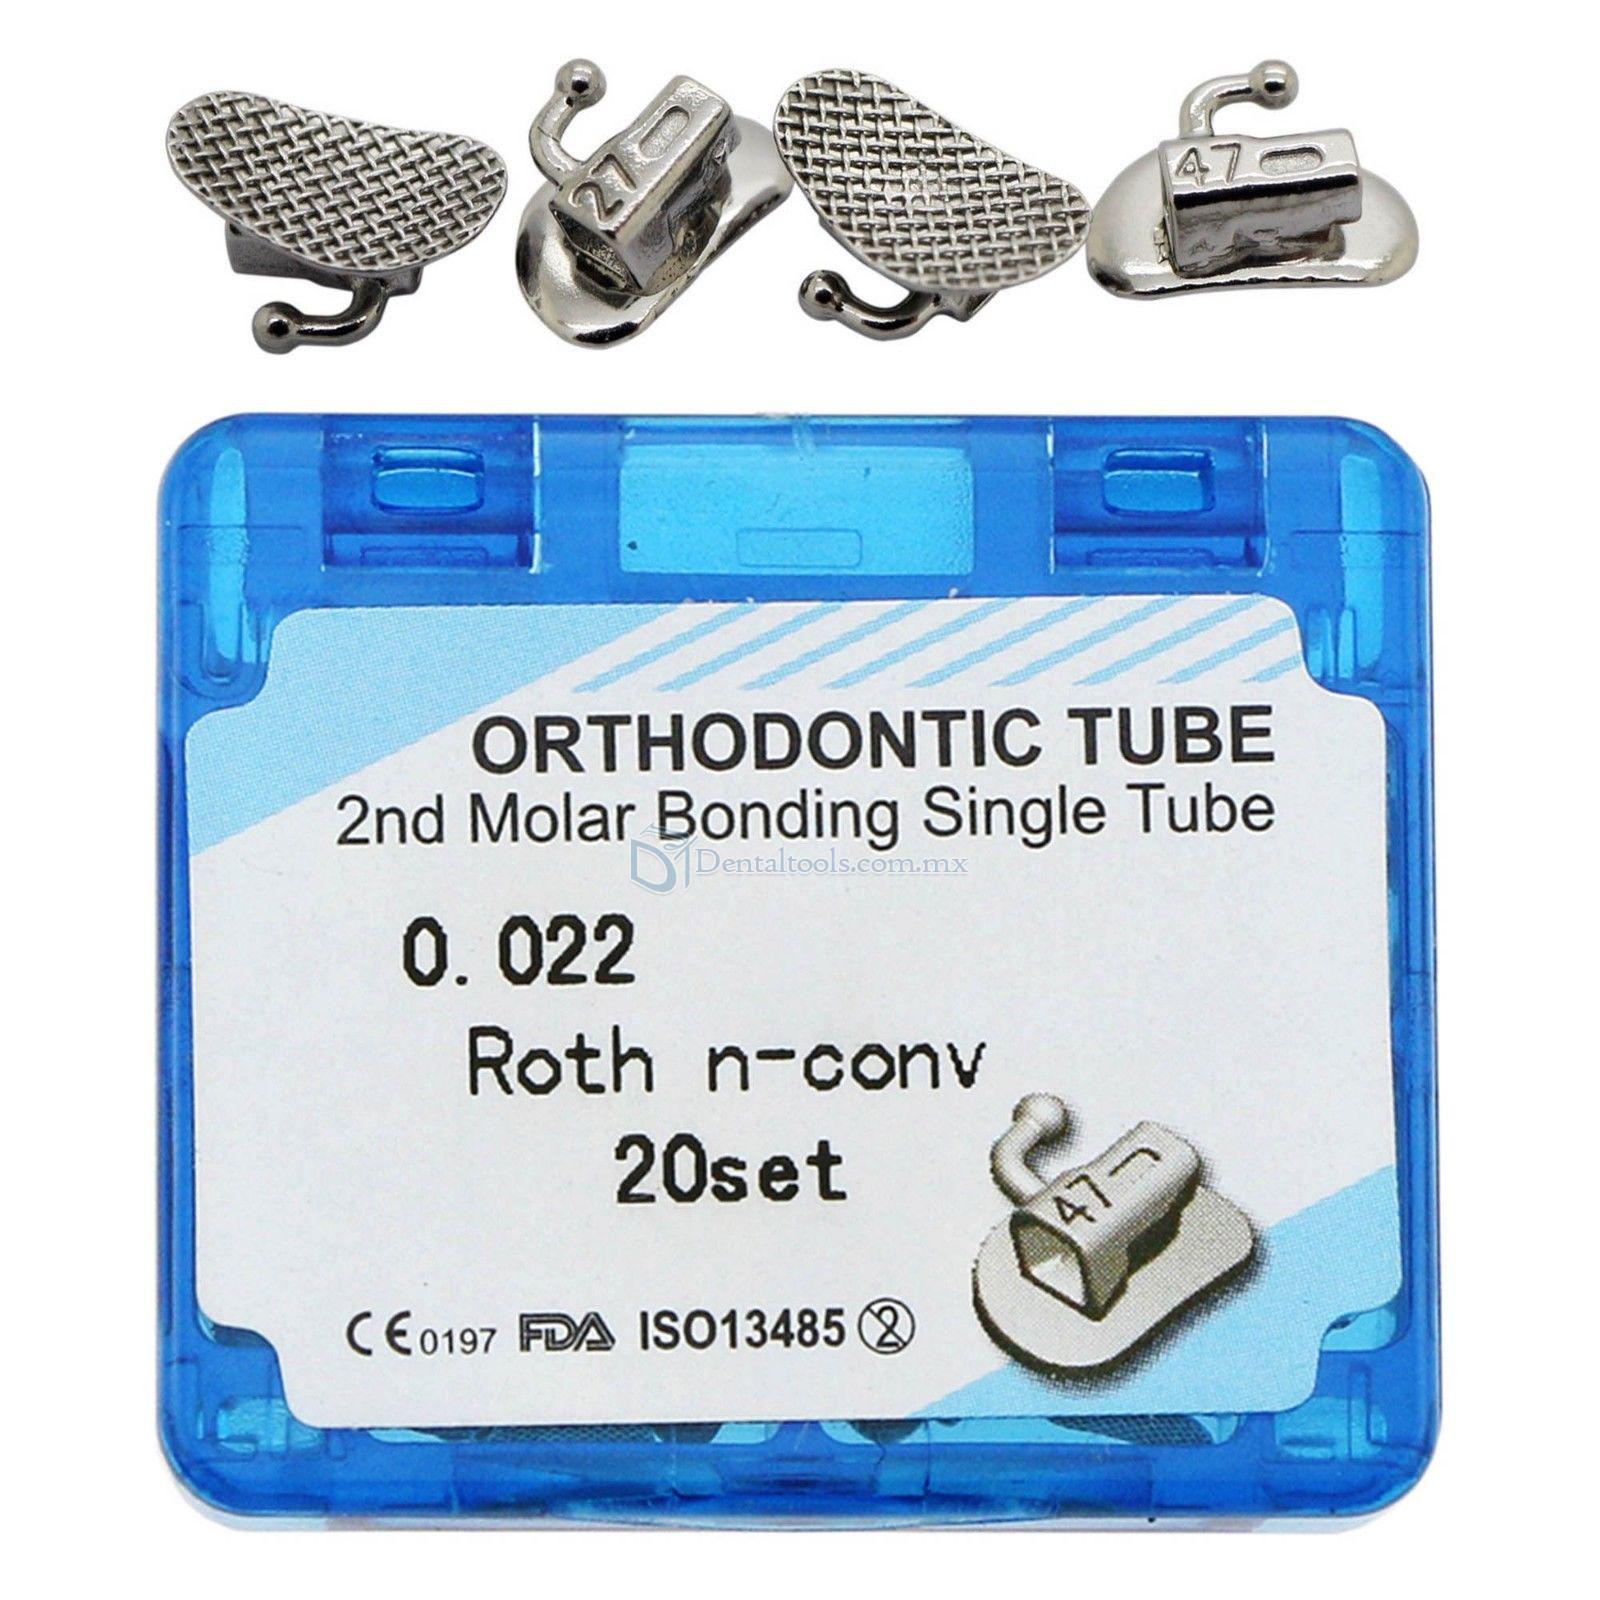 20 Set/caja Tubo bucal solo Roth 0.022 2nd Molar de la vinculación ortodóntica